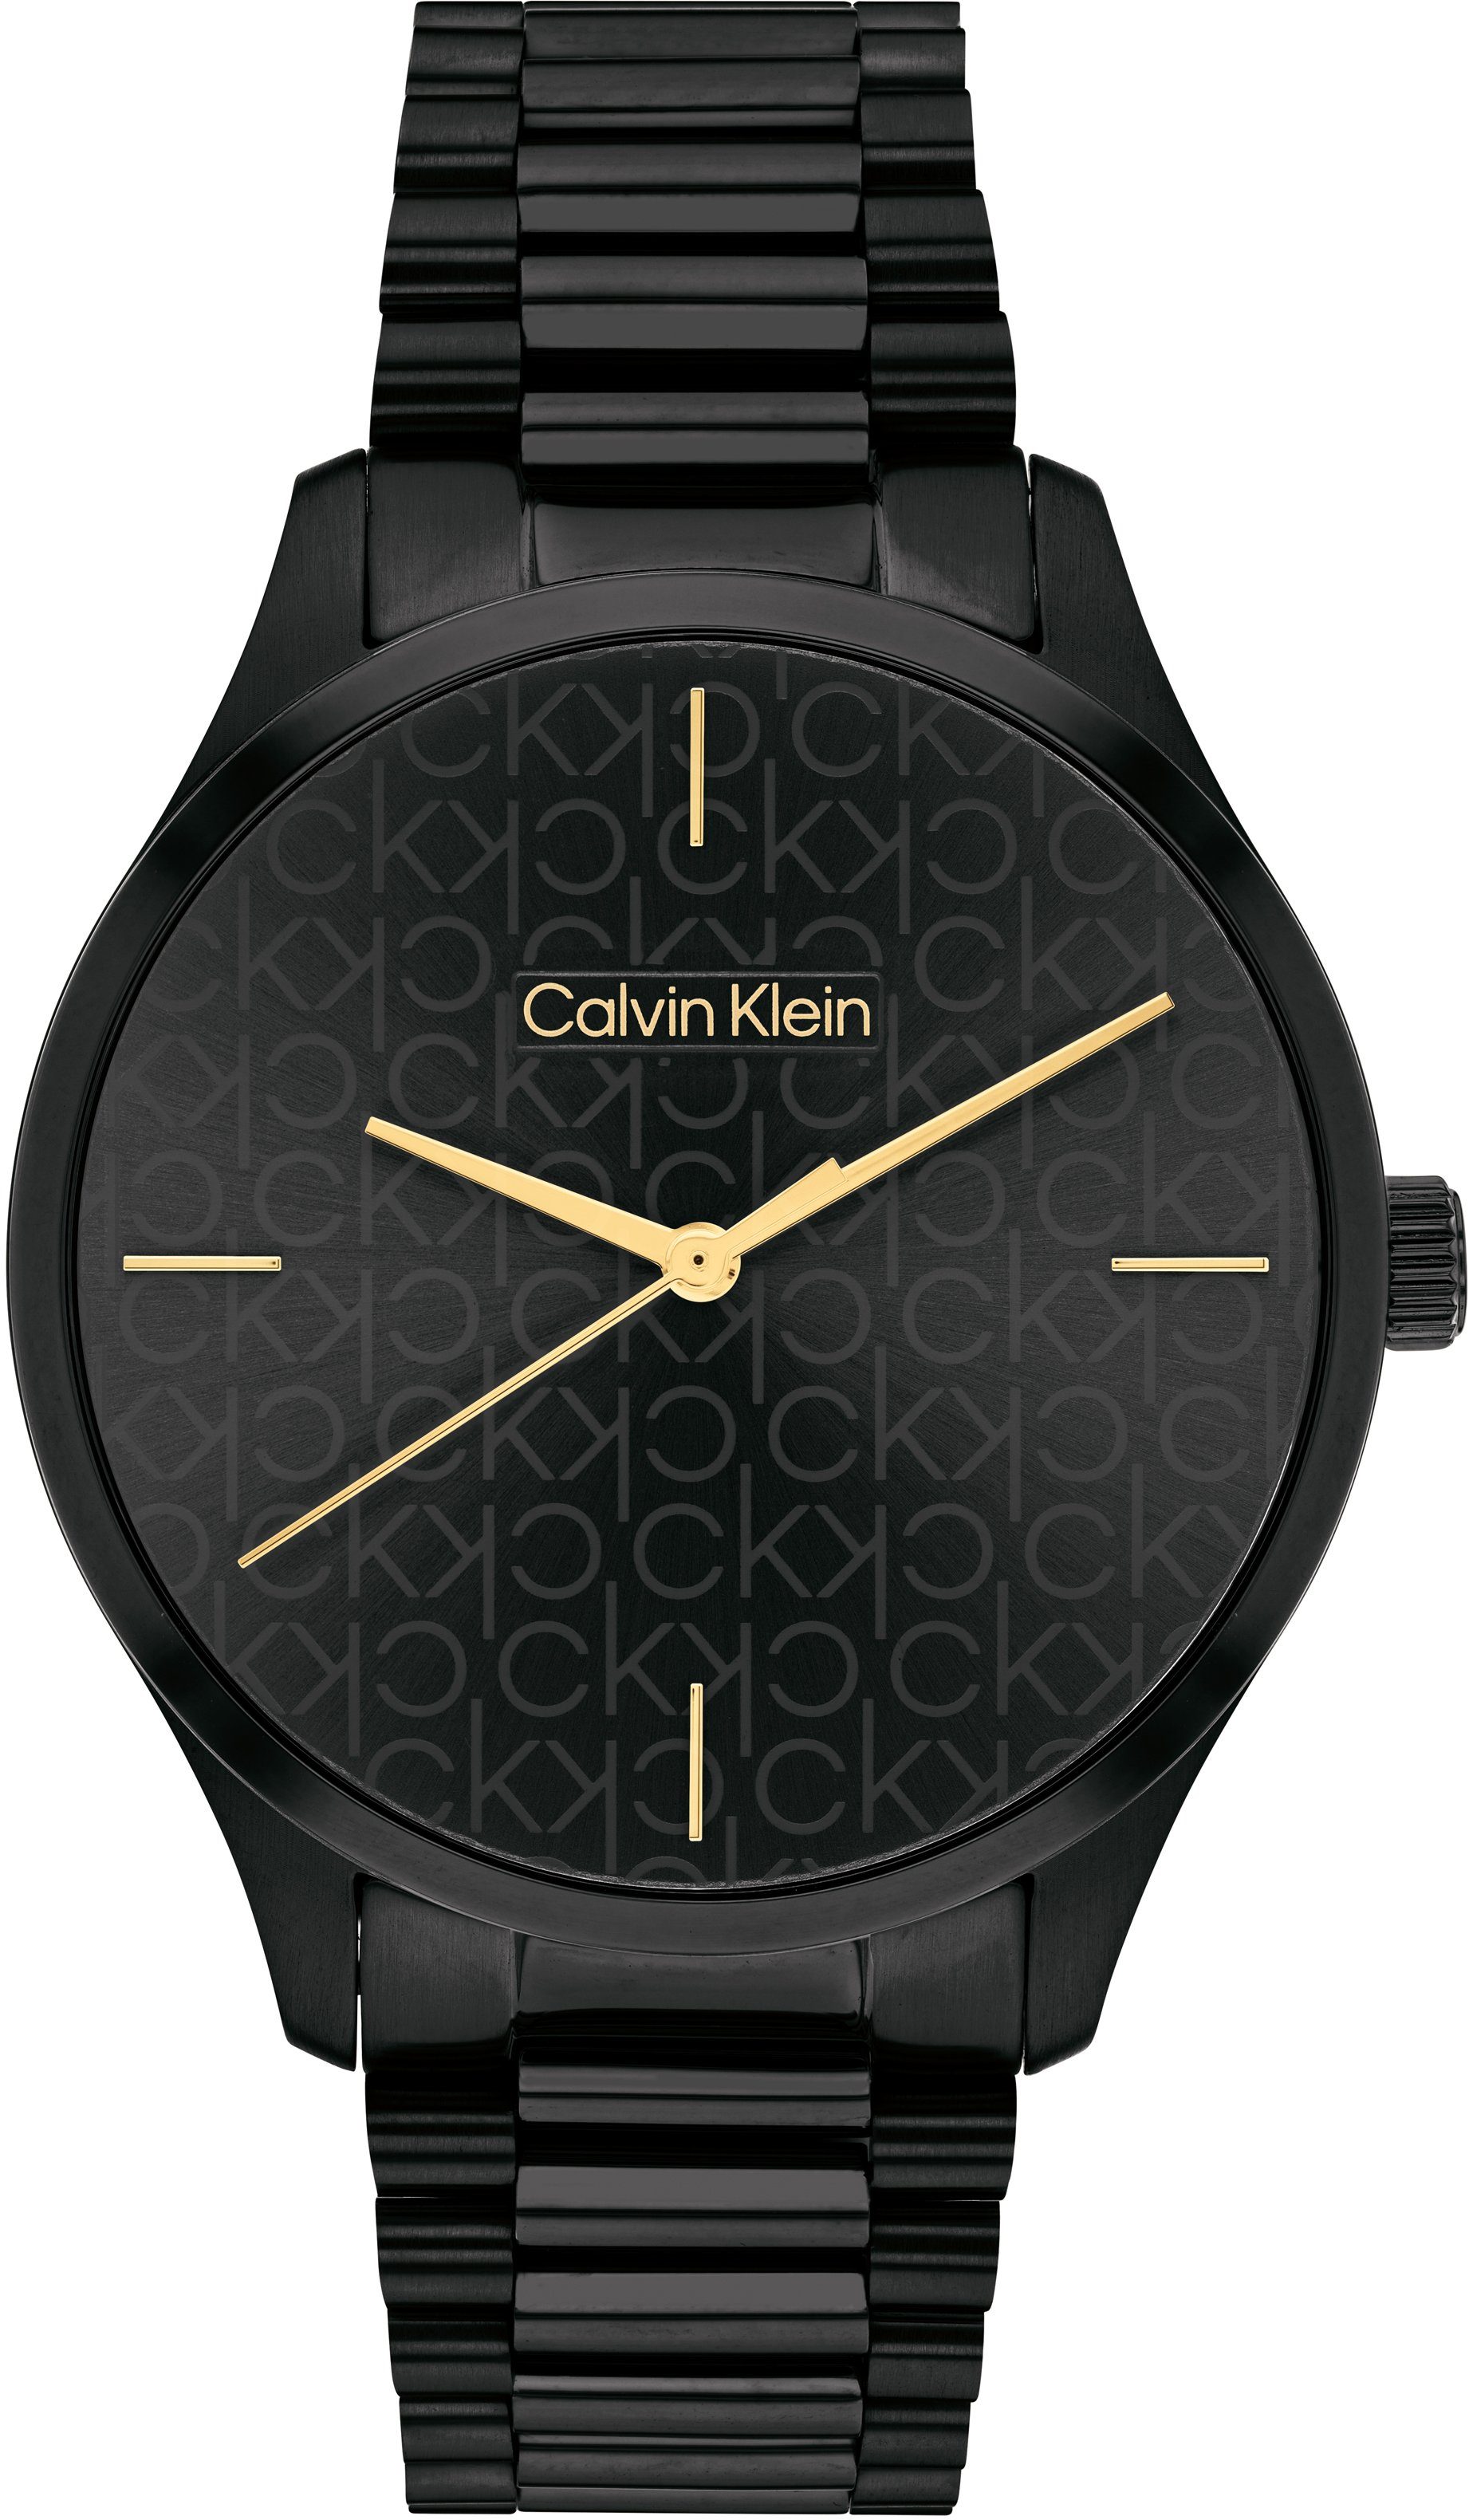 Calvin Klein Quarzuhr ICONIC, 25200170, Armbanduhr, Damenuhr, Mineralglas, IP-Beschichtung